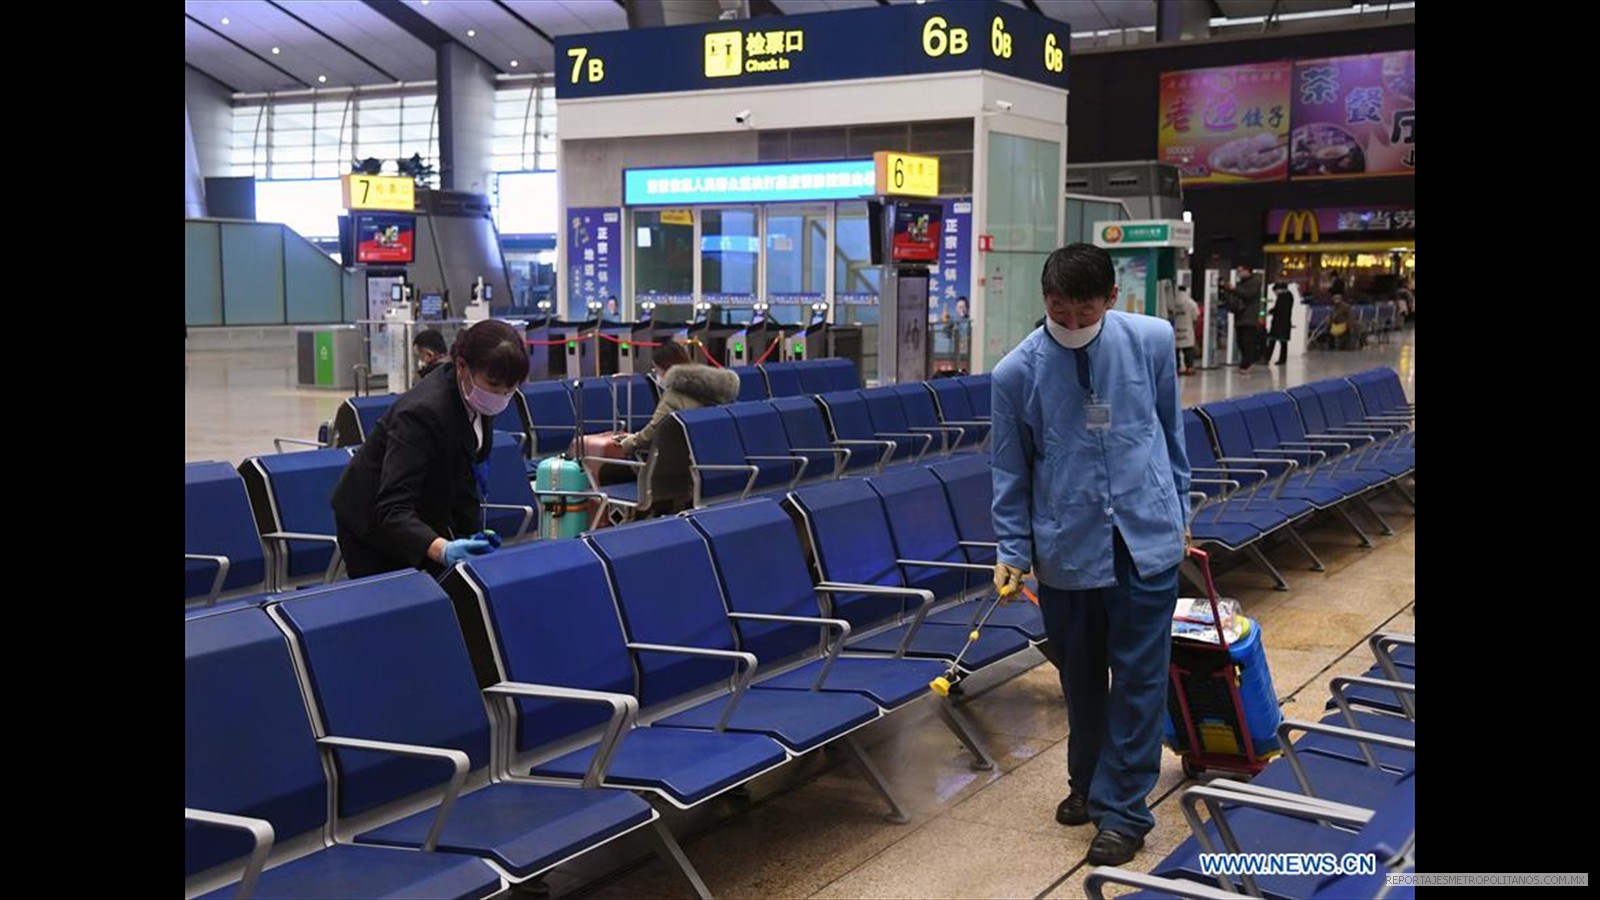 Desinfecta la sala de espera en la estación de tren sur de Beijing en Beijing